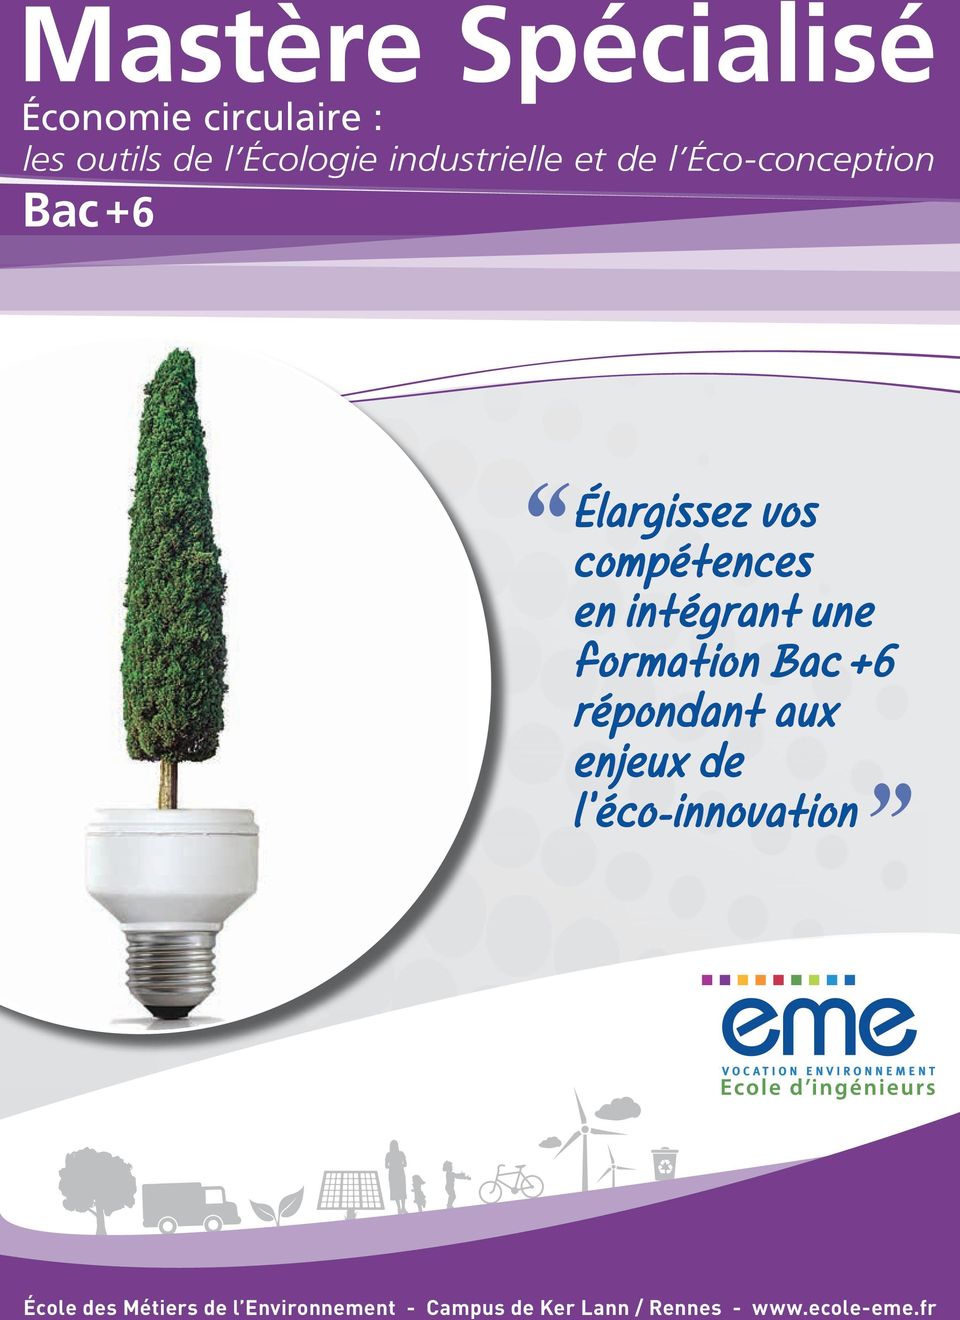 intégrant une formation Bac +6 répondant aux enjeux de l'éco-innovation